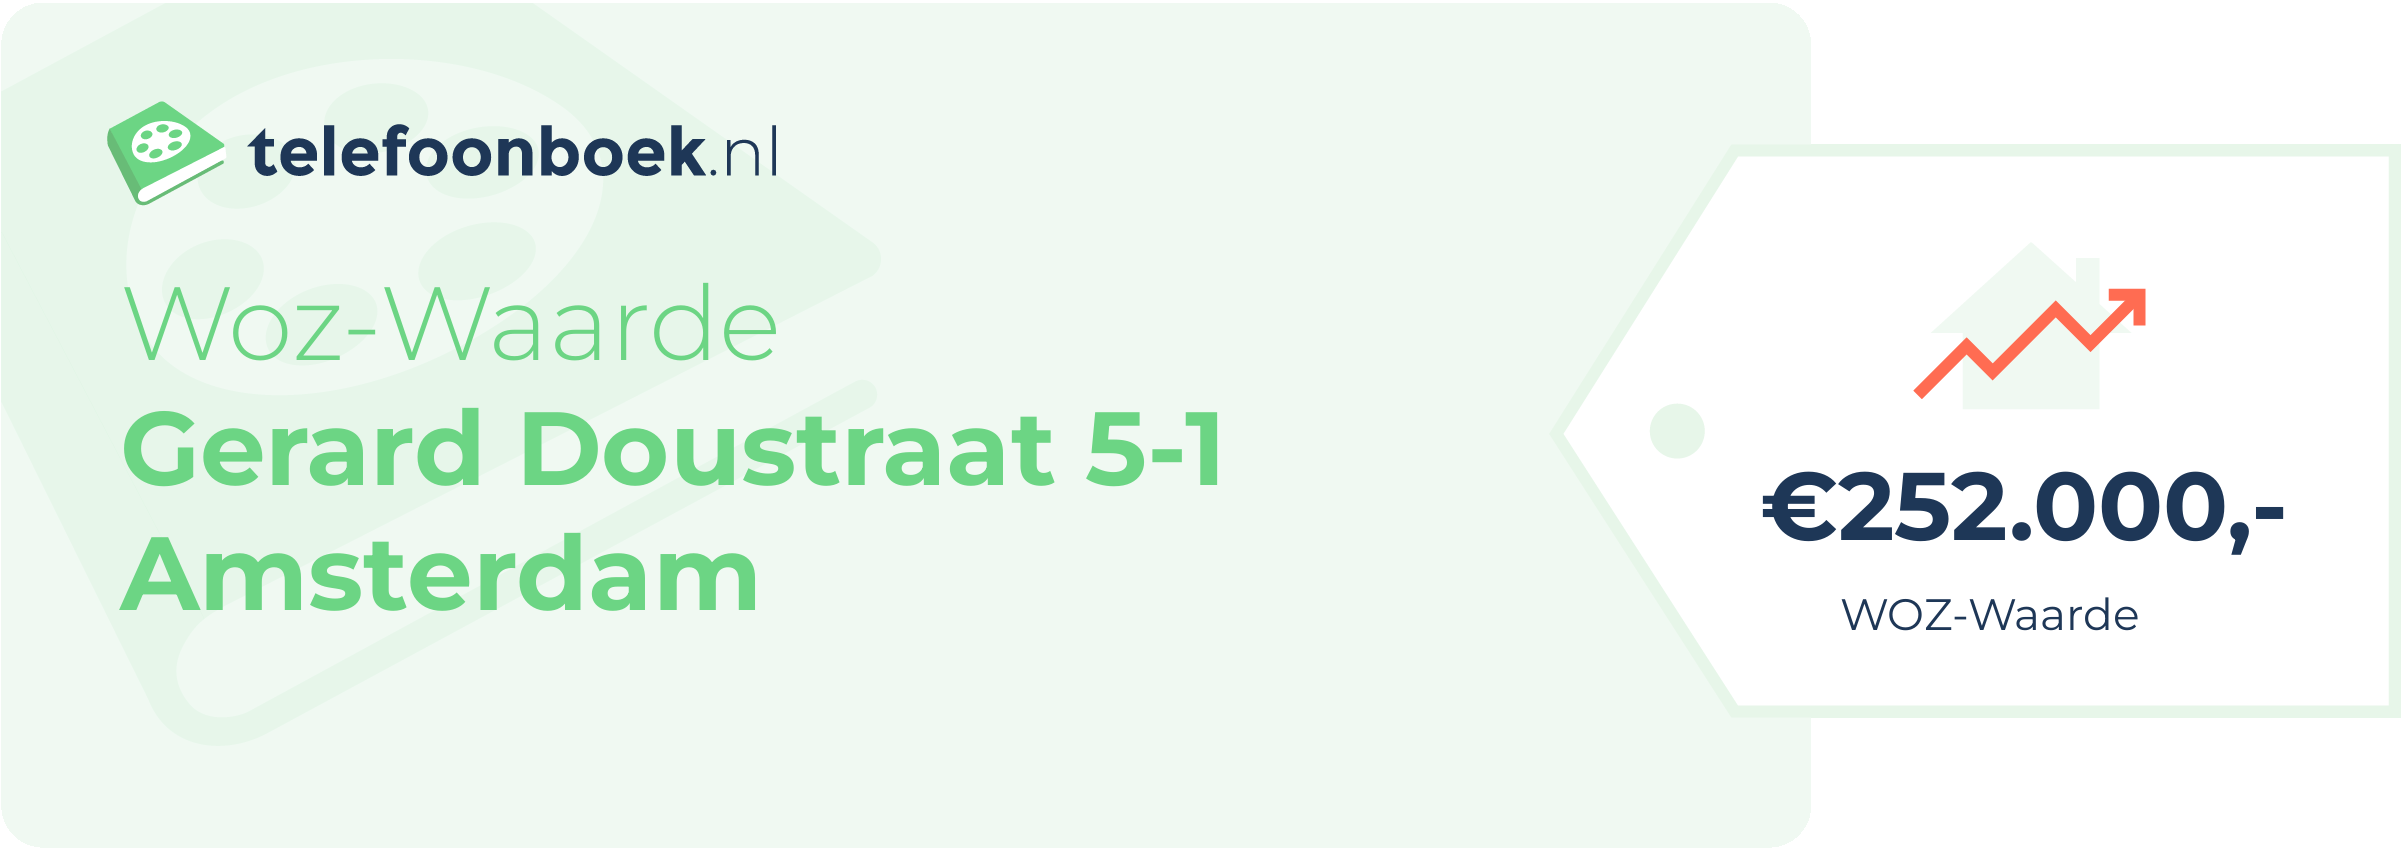 WOZ-waarde Gerard Doustraat 5-1 Amsterdam